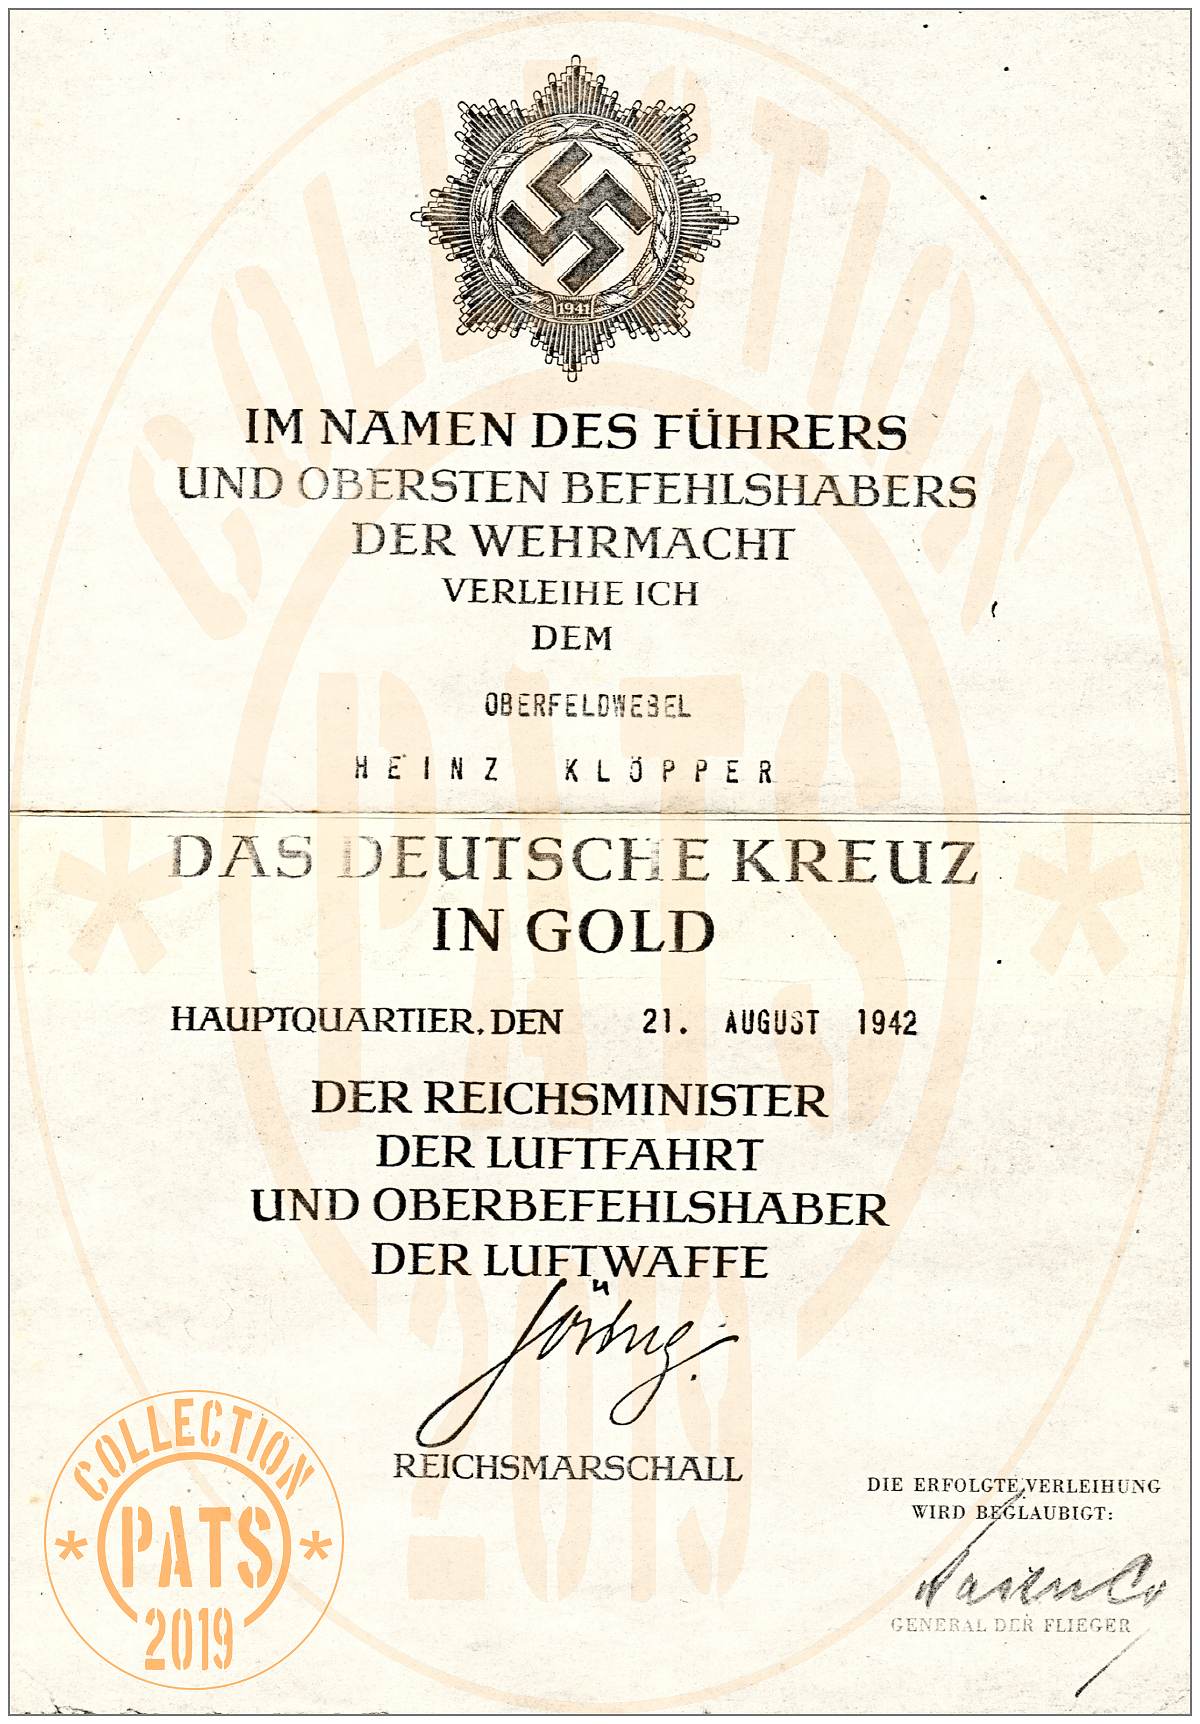 Oberfeldwebel Heinz Klöpper - DAS DEUTSCHE KREUZ IN GOLD, 21 Aug 1942